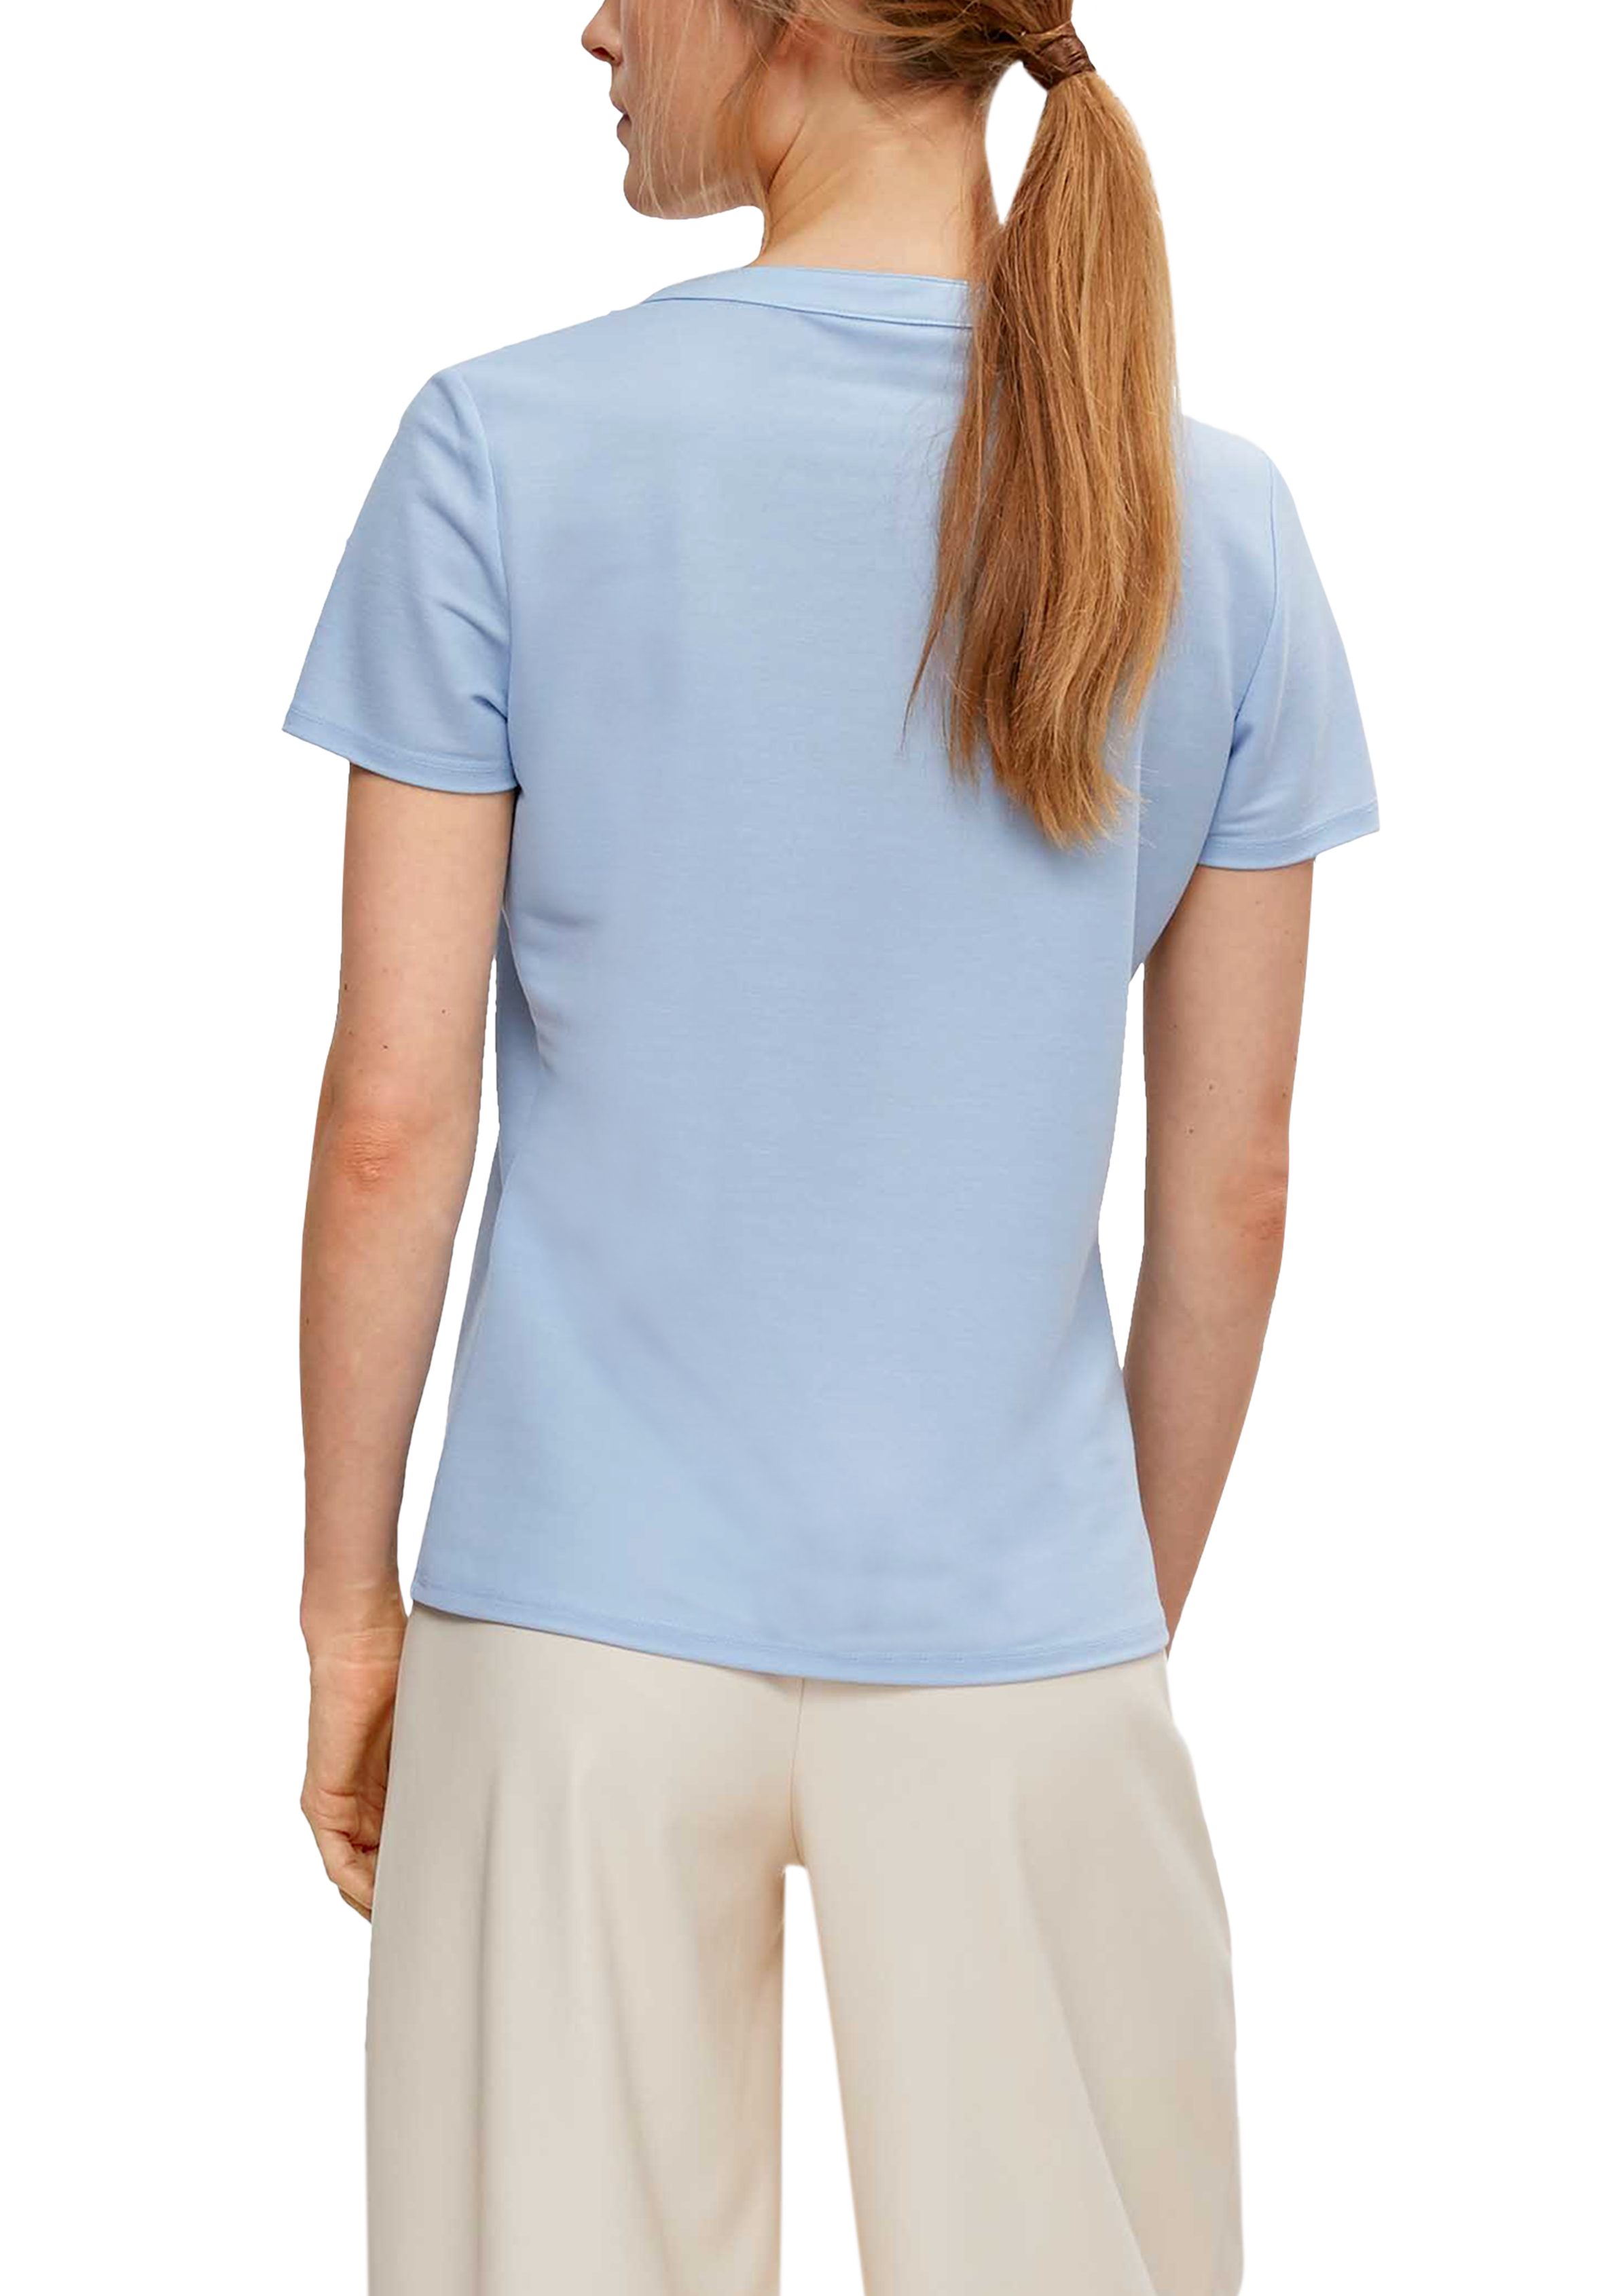 Comma Tunikaausschnitt Shirttop Modalmix-Shirt mit